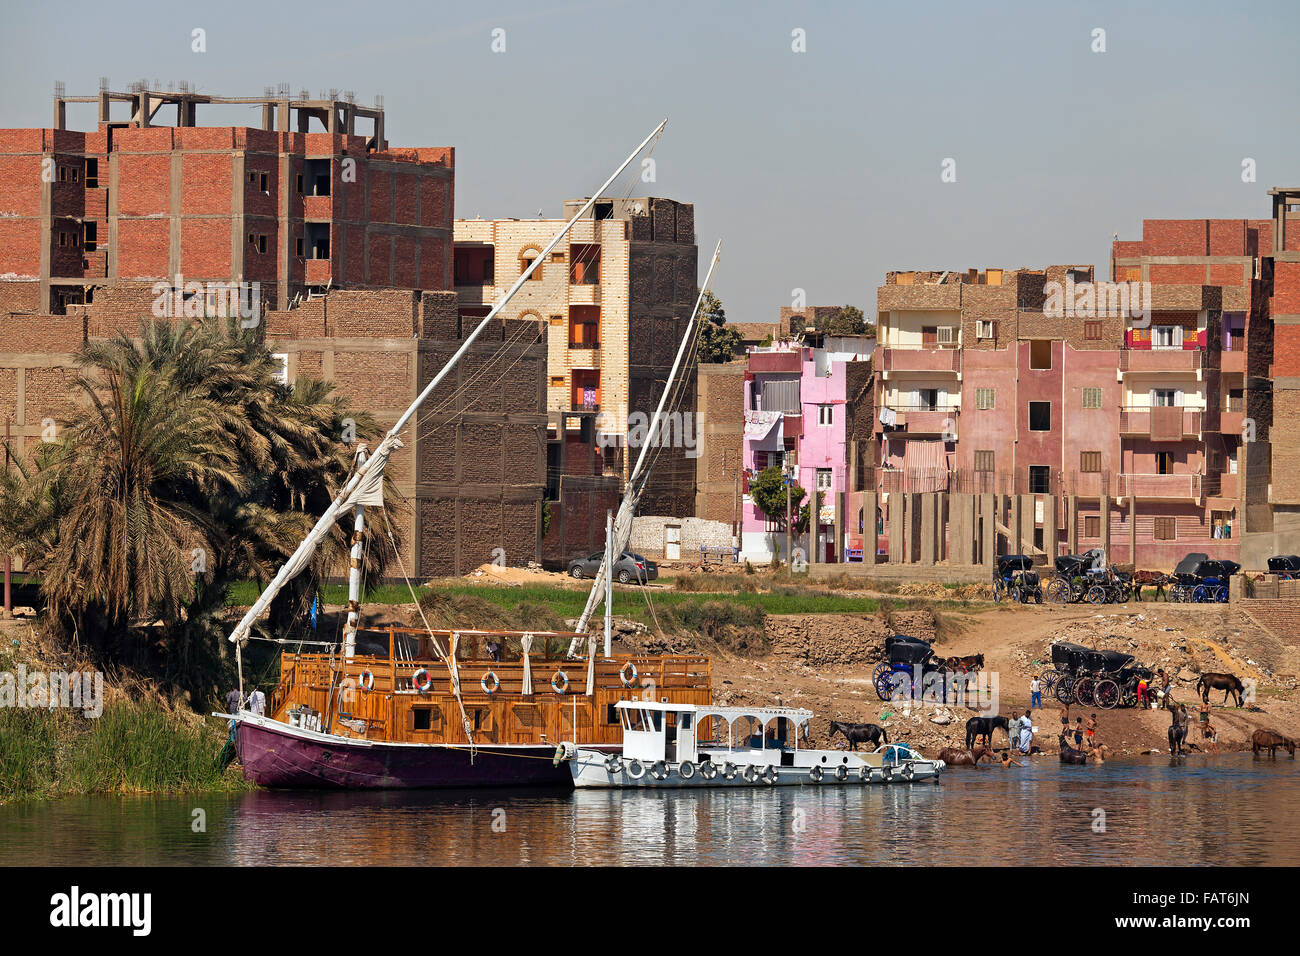 Dahabeya / Dahabiya bateau de croisière et la ville Edfou / Idfu / Edfou sur la rive ouest du Nil, l'Egypte Banque D'Images